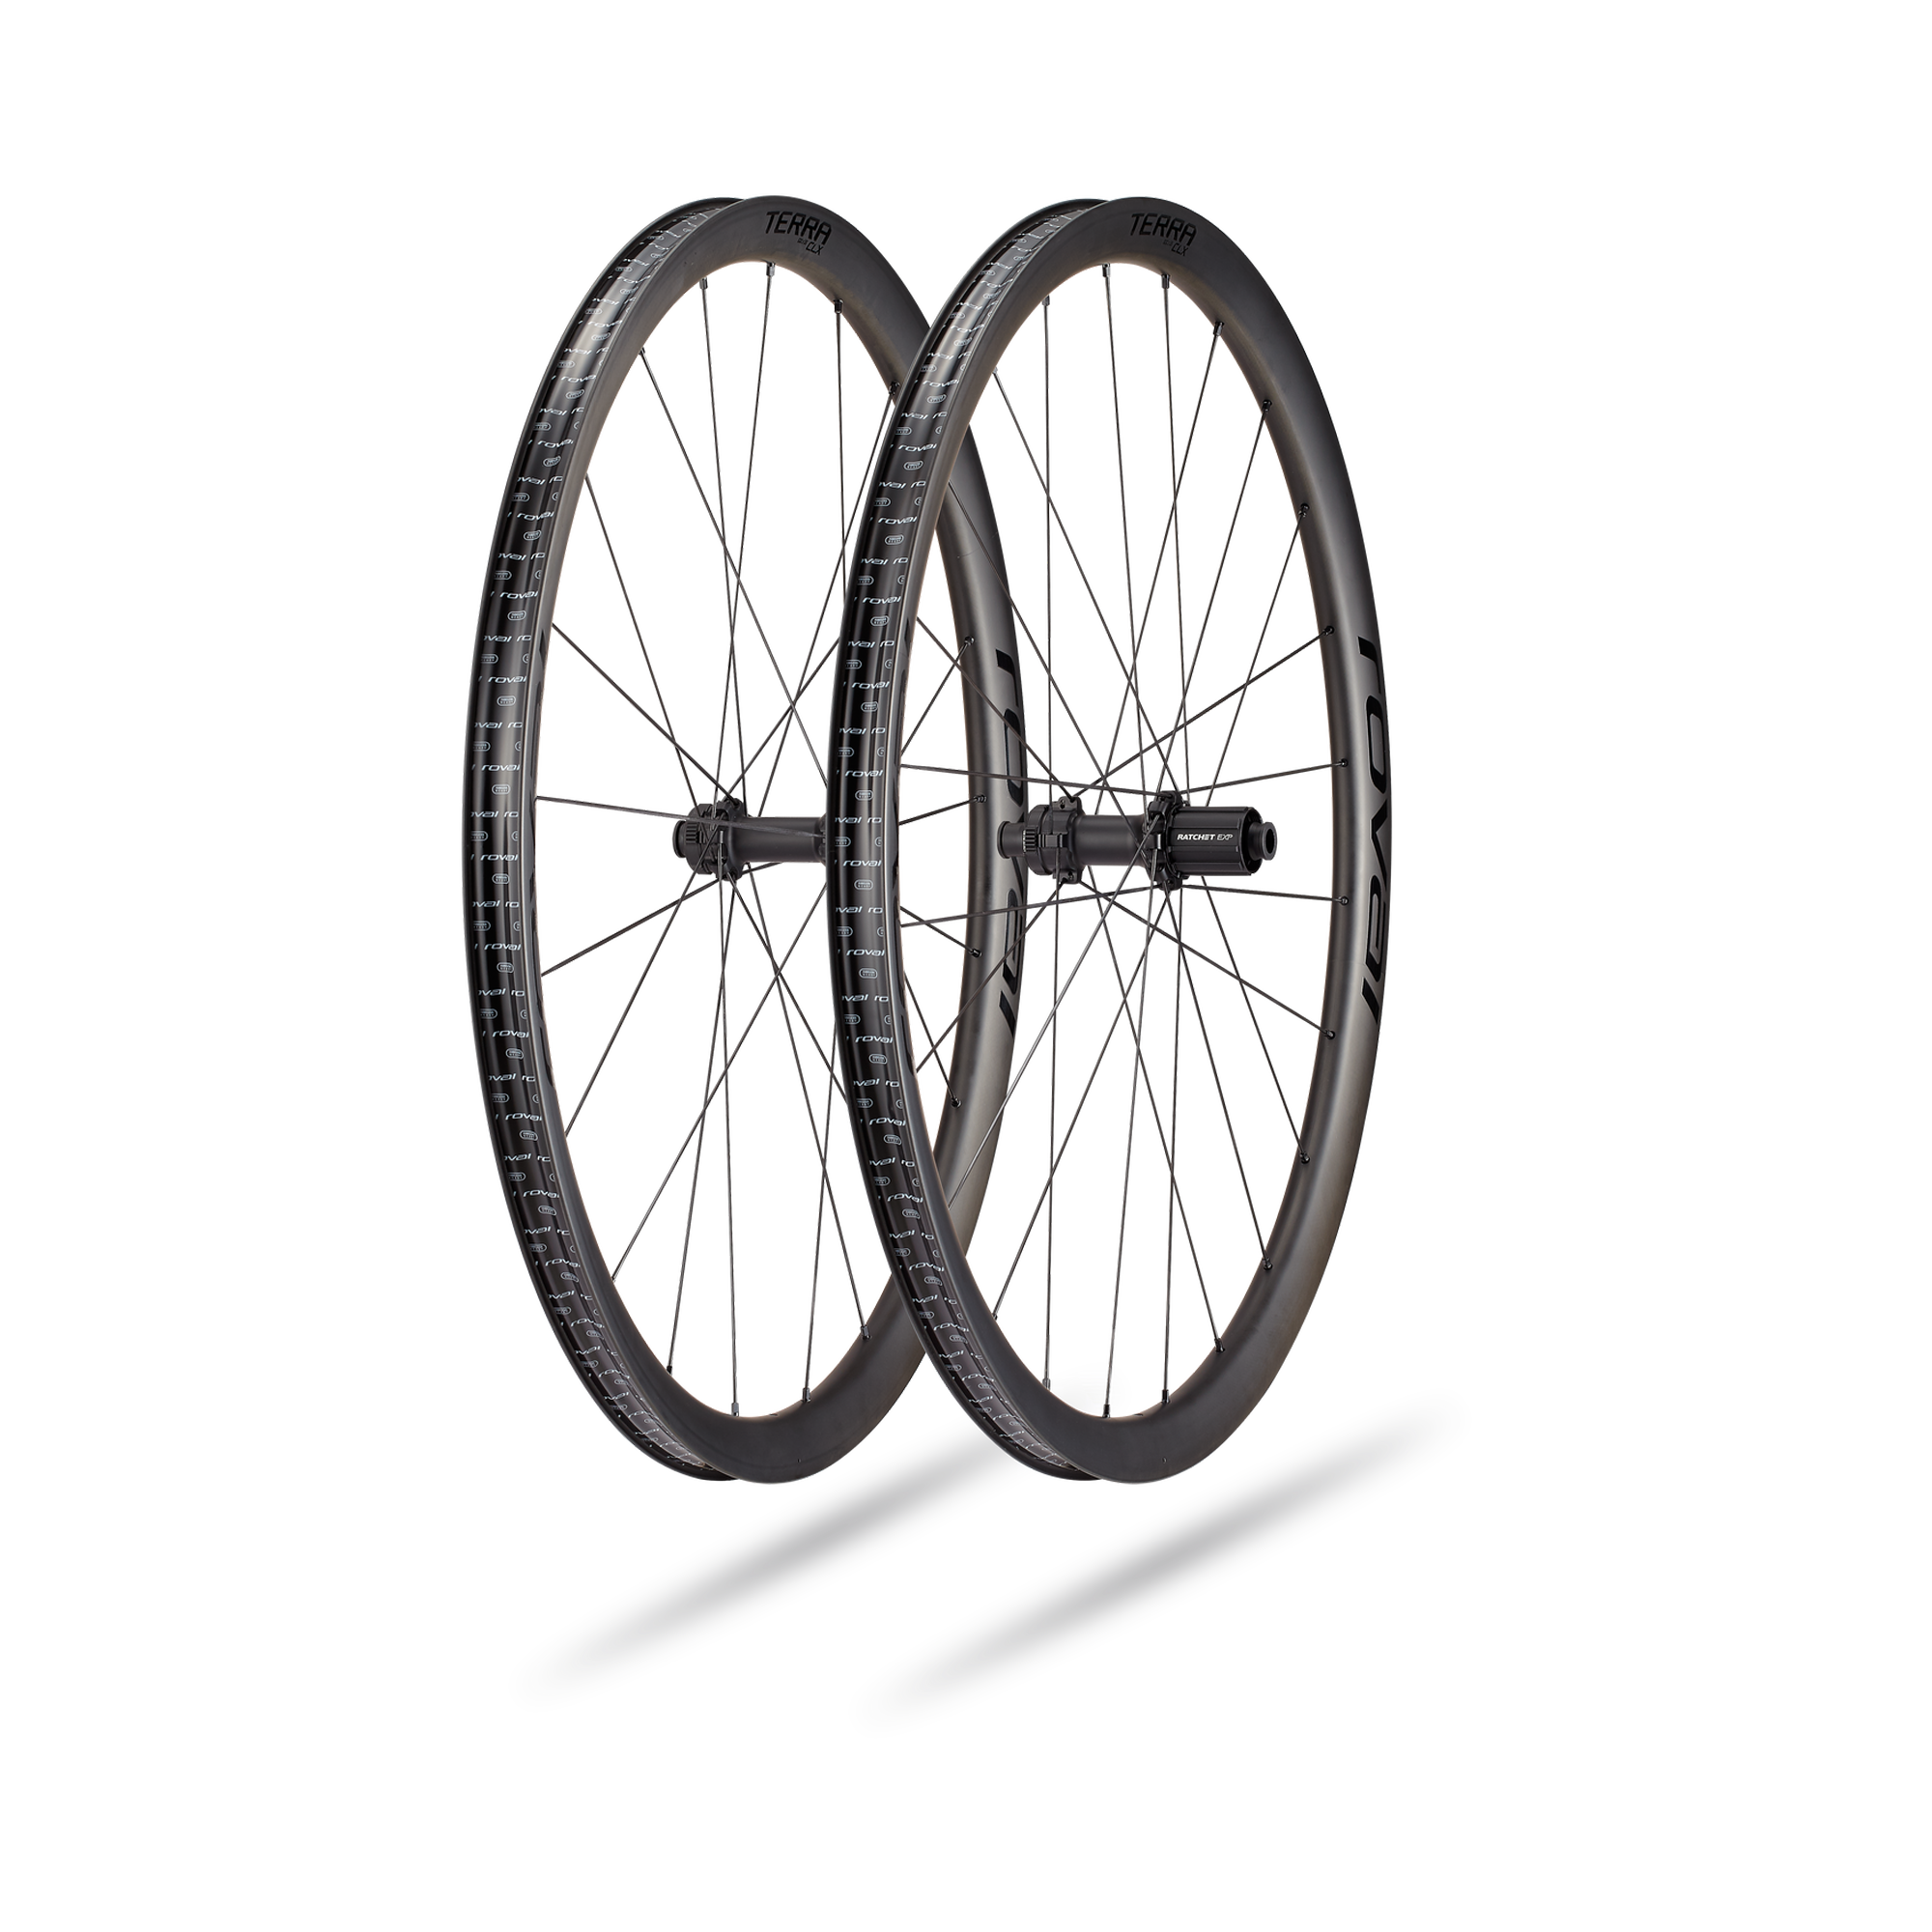 Paire de roues Gravel - Roval Terra CLX II